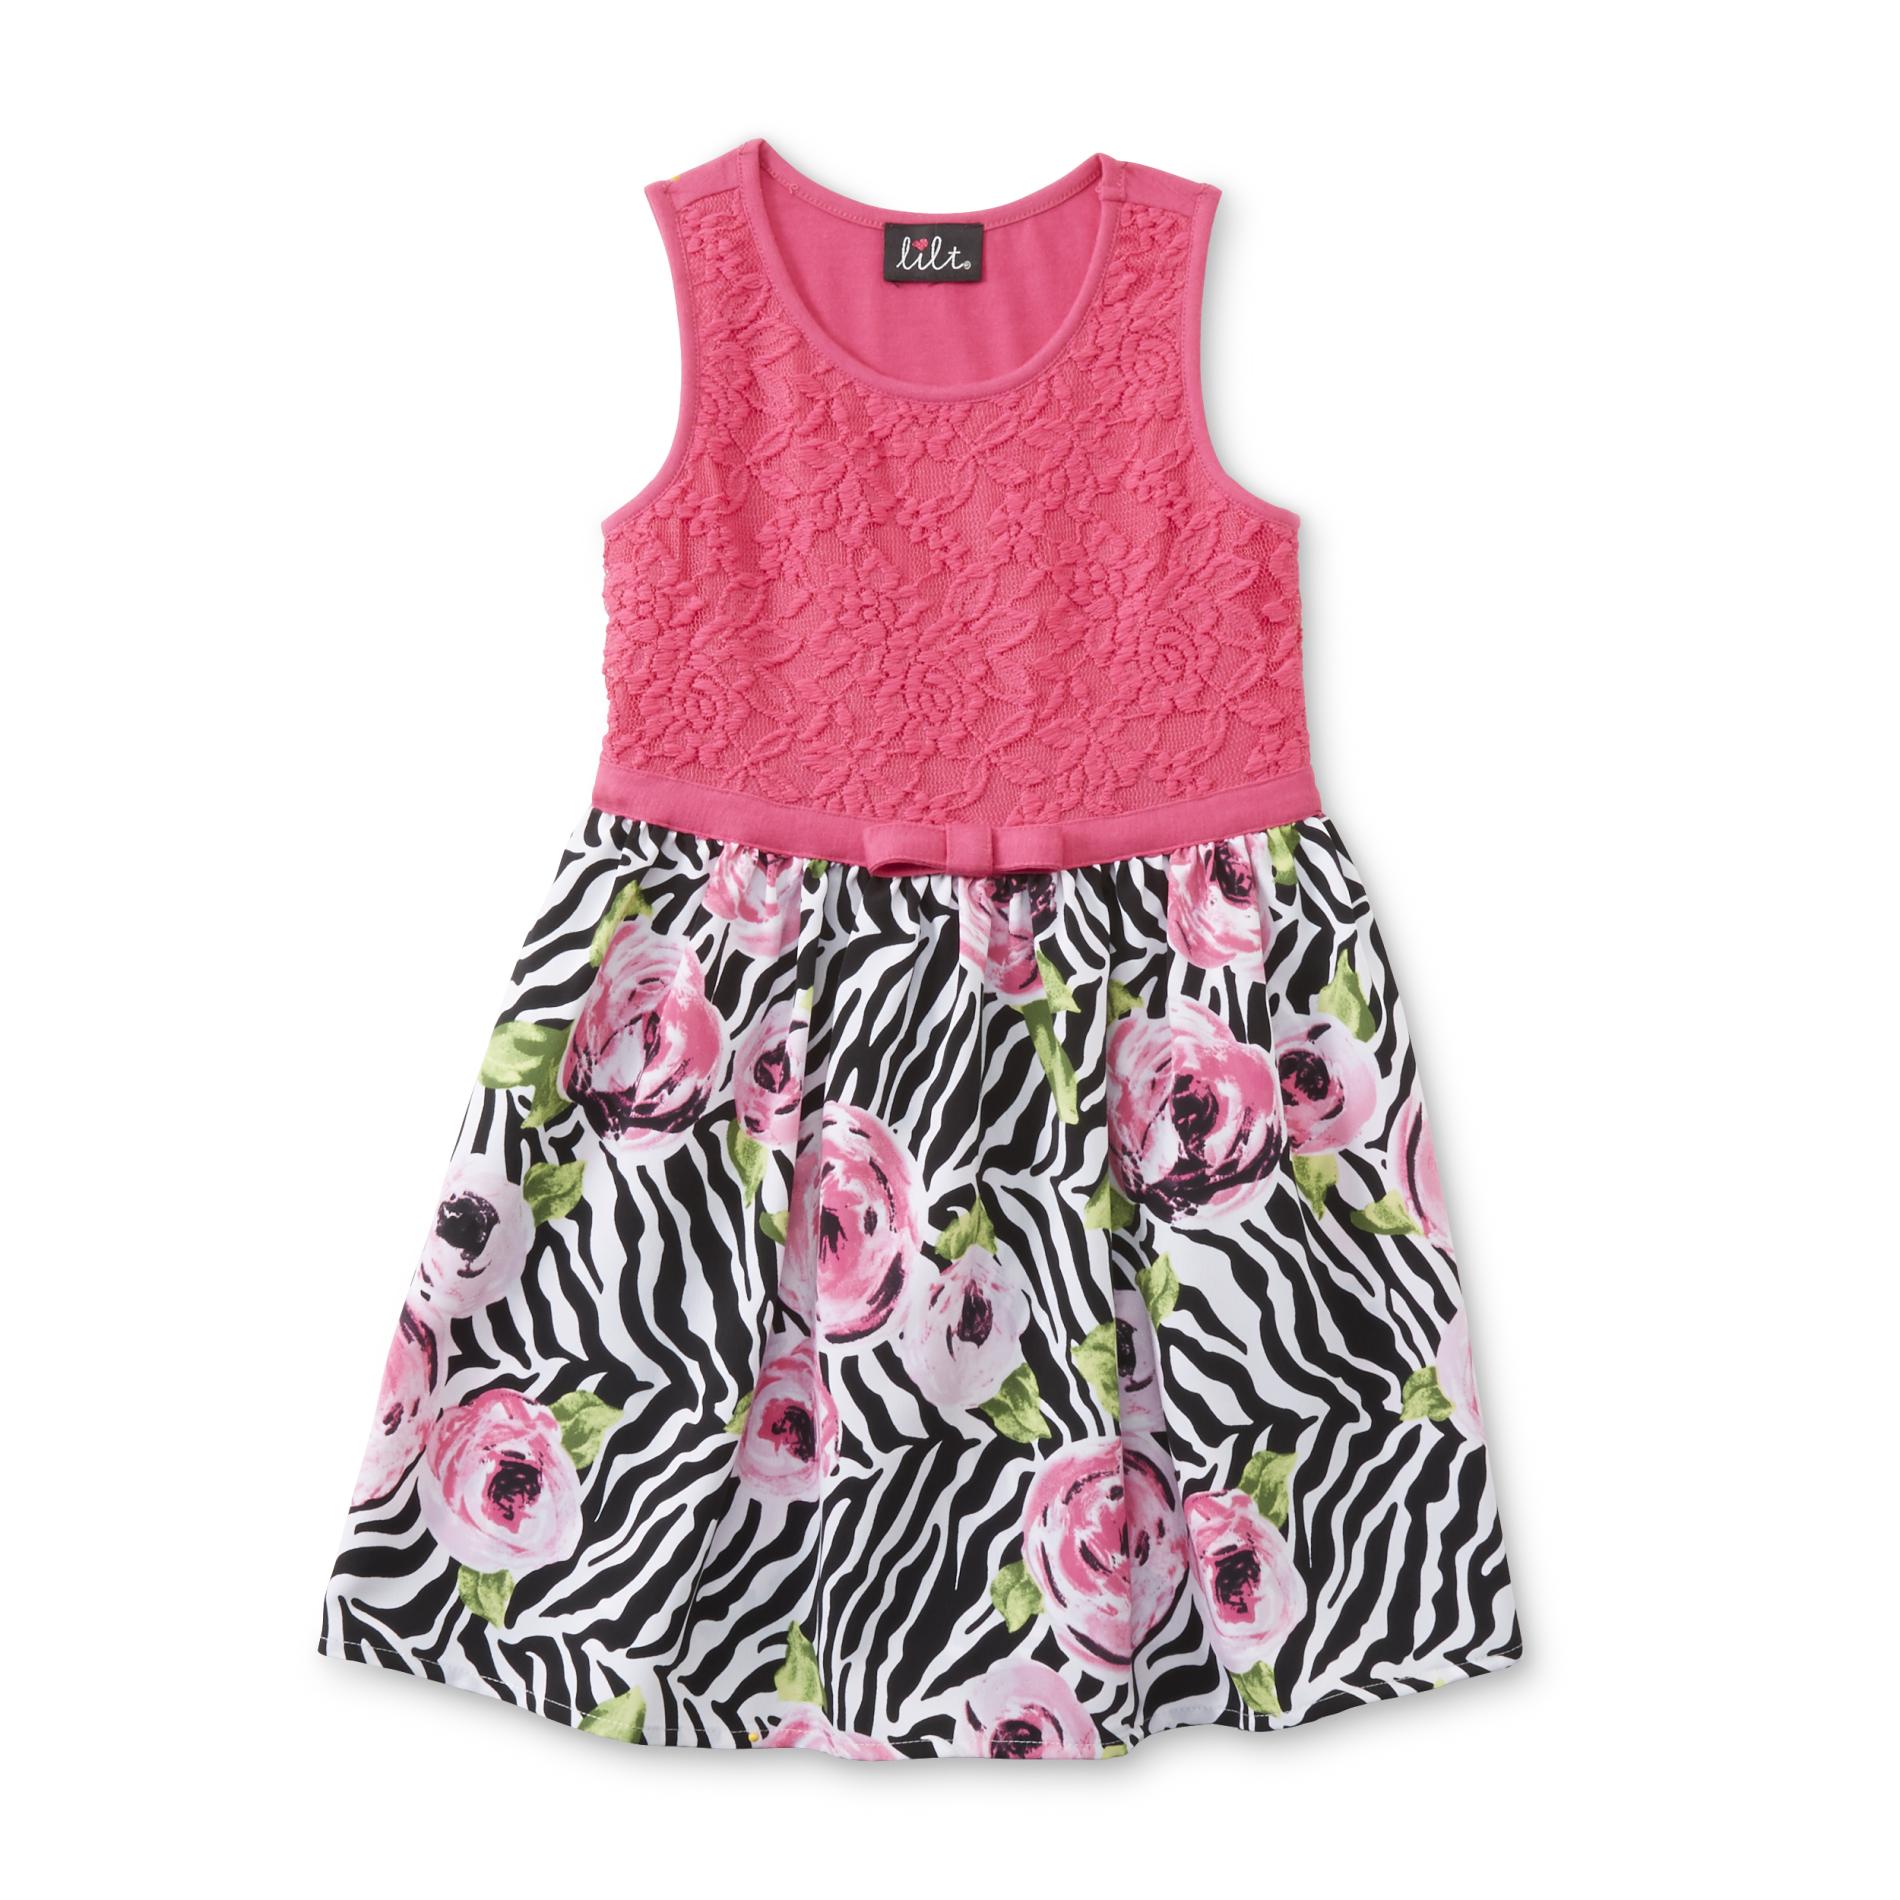 Girl's Sleeveless Dress - Zebra Print